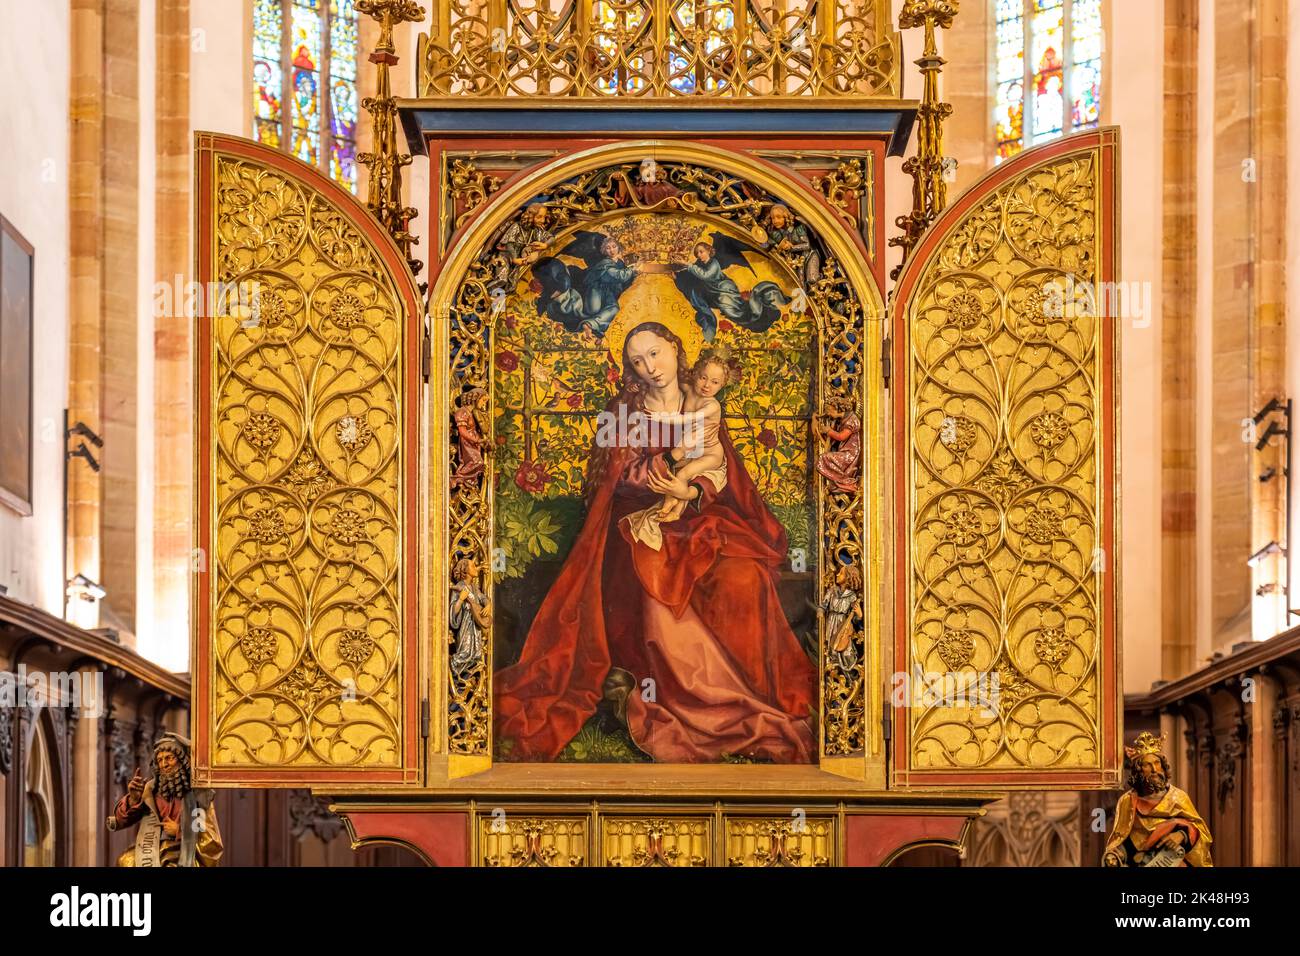 Madonna im Rosenhag von Martin Schongauer im Innenraum der Dominikanerkirche in Colmar, Elsass, Frankreich  |  Martin Schongauer's masterwork La Vierg Stock Photo